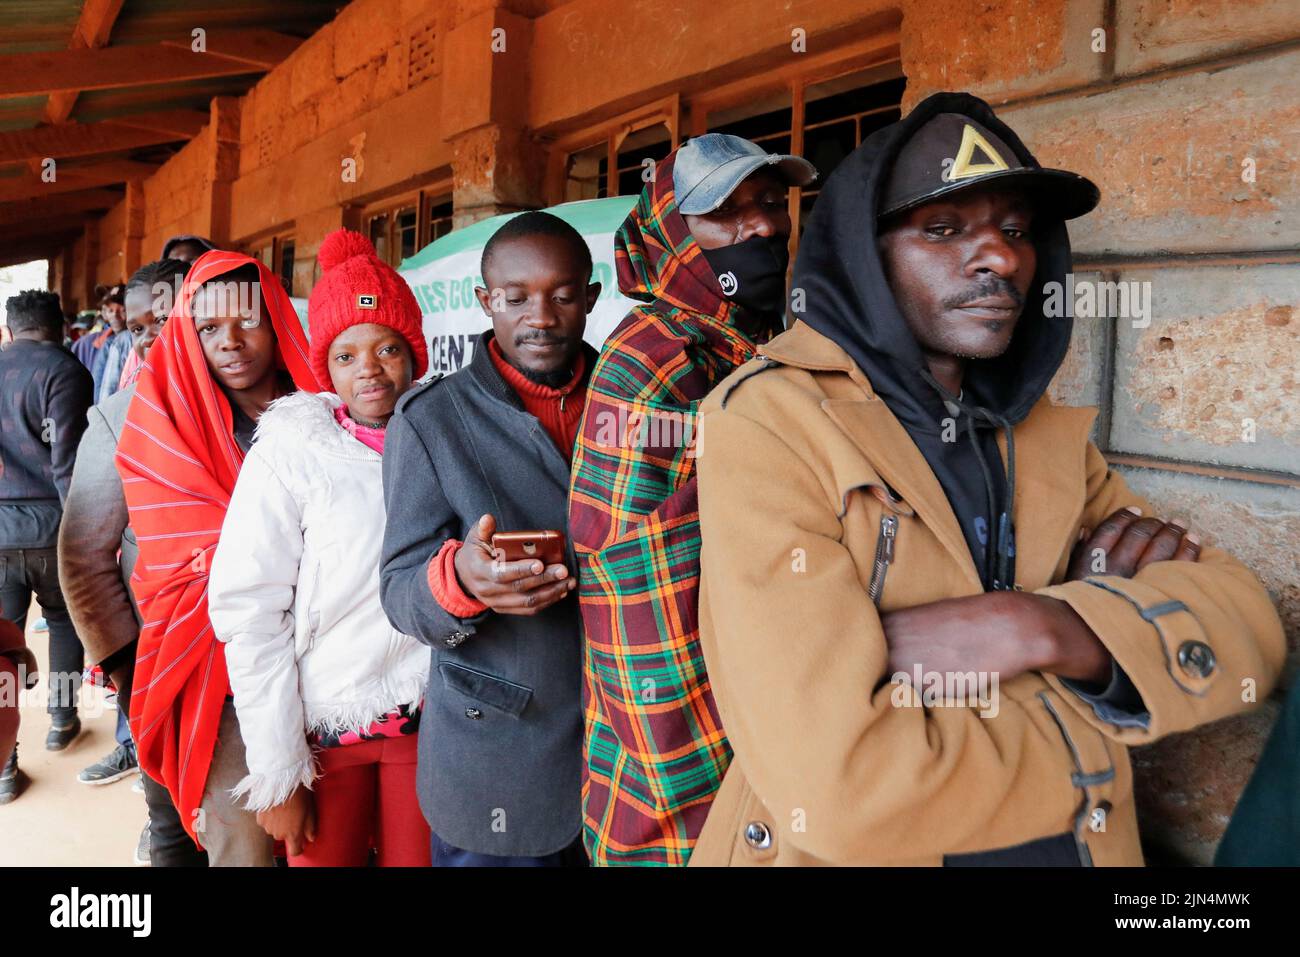 Los votantes hacen cola antes de emitir su voto durante las elecciones generales de la Comisión Electoral Independiente y de Fronteras (IEBC) en la aldea de Mashimoni en los barrios marginales de Kibera en Nairobi, Kenia 9 de agosto de 2022. REUTERS/Thomas Mukoya Foto de stock